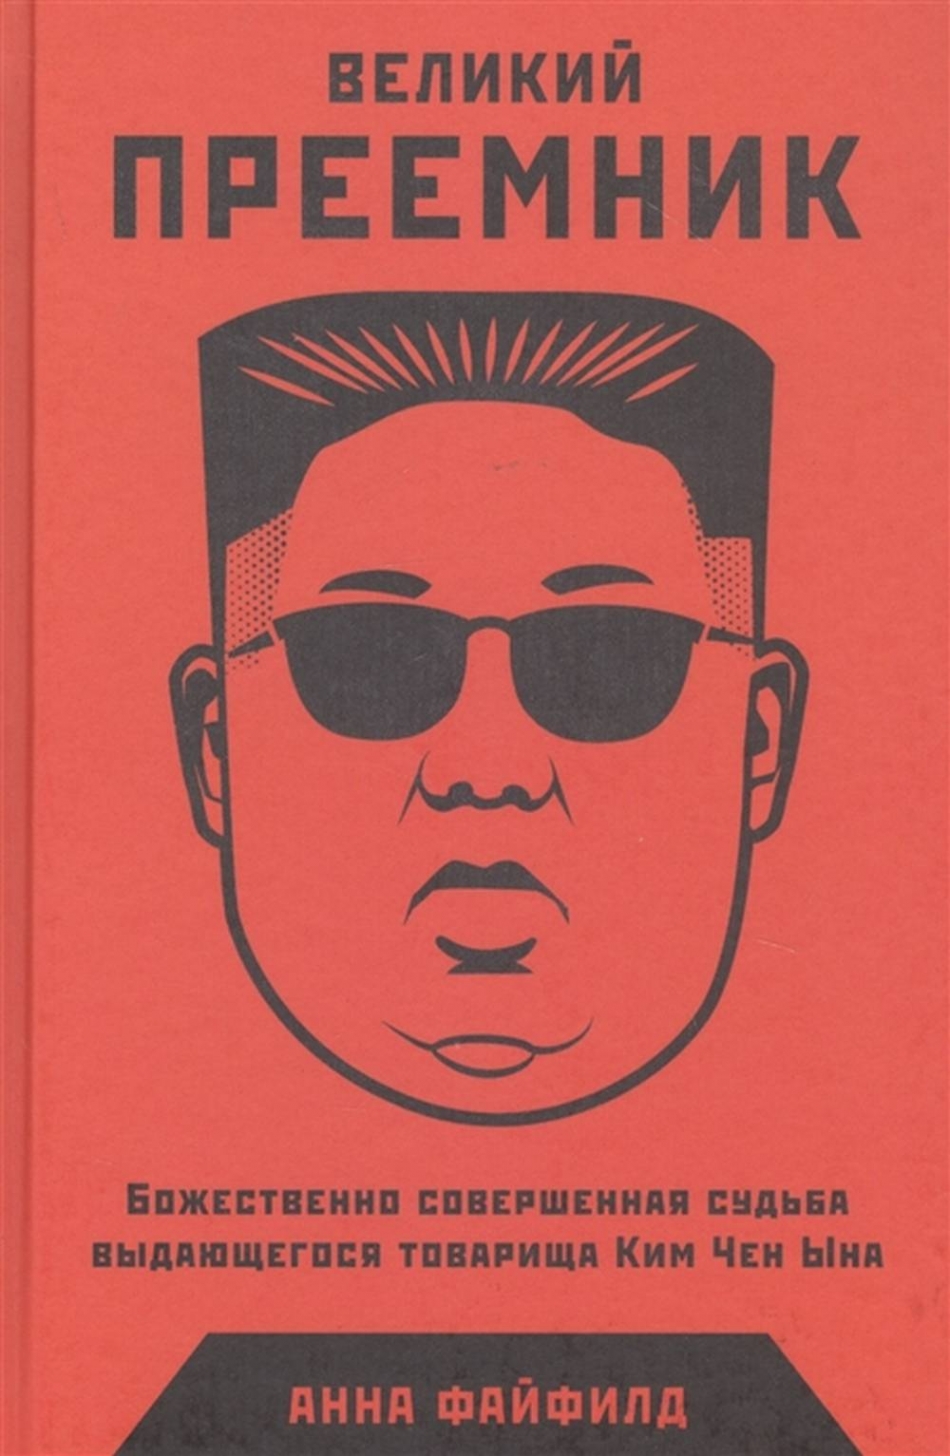 Файфилд А Великий Преемник: Божественно Совершенная Судьба Выдающегося Товарища Ким Чен Ына 